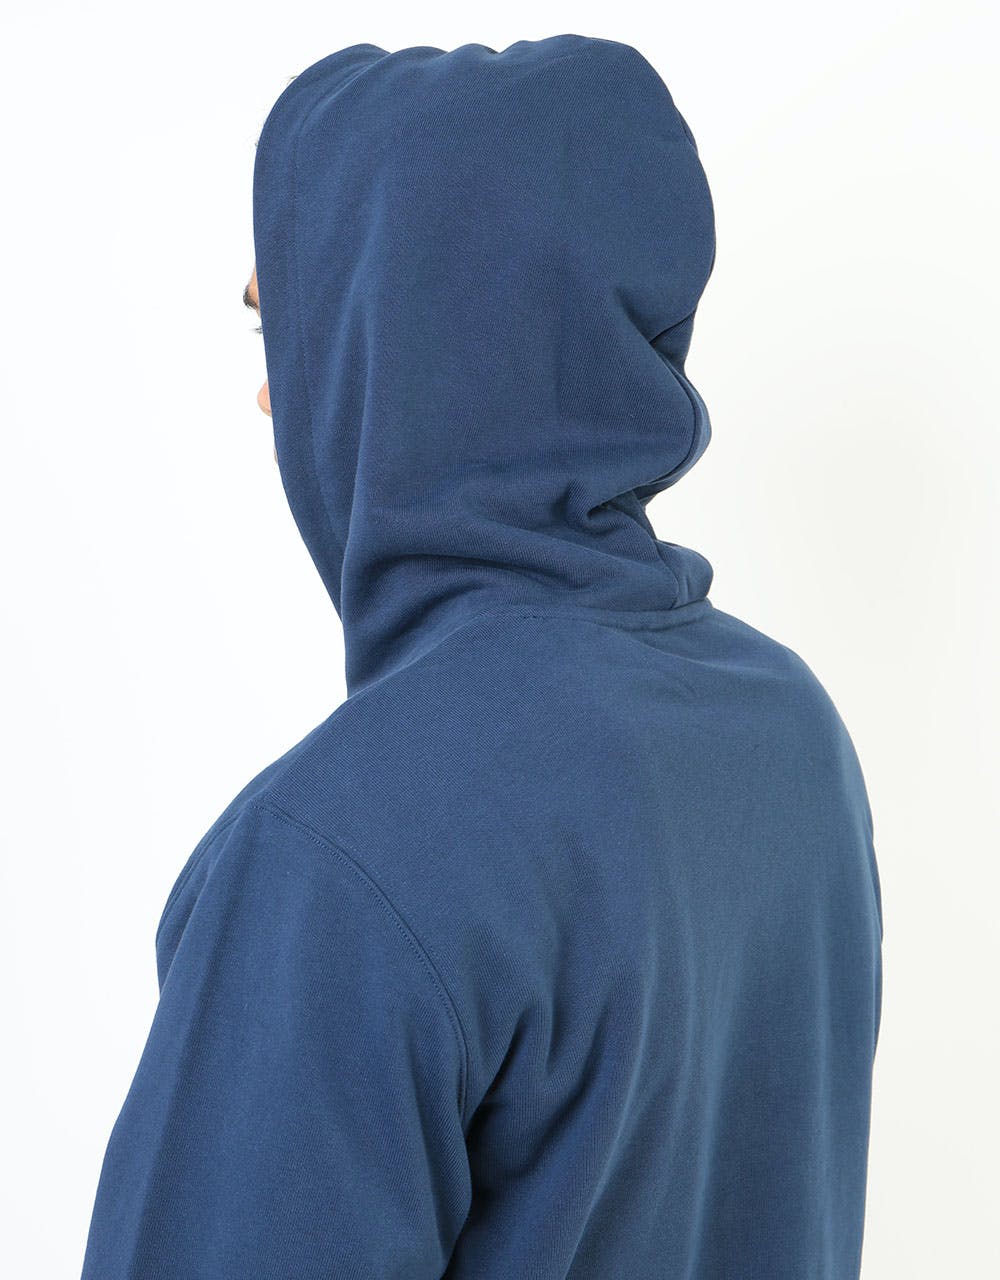 Carhartt WIP Hooded Knowledge Sweatshirt - Blue